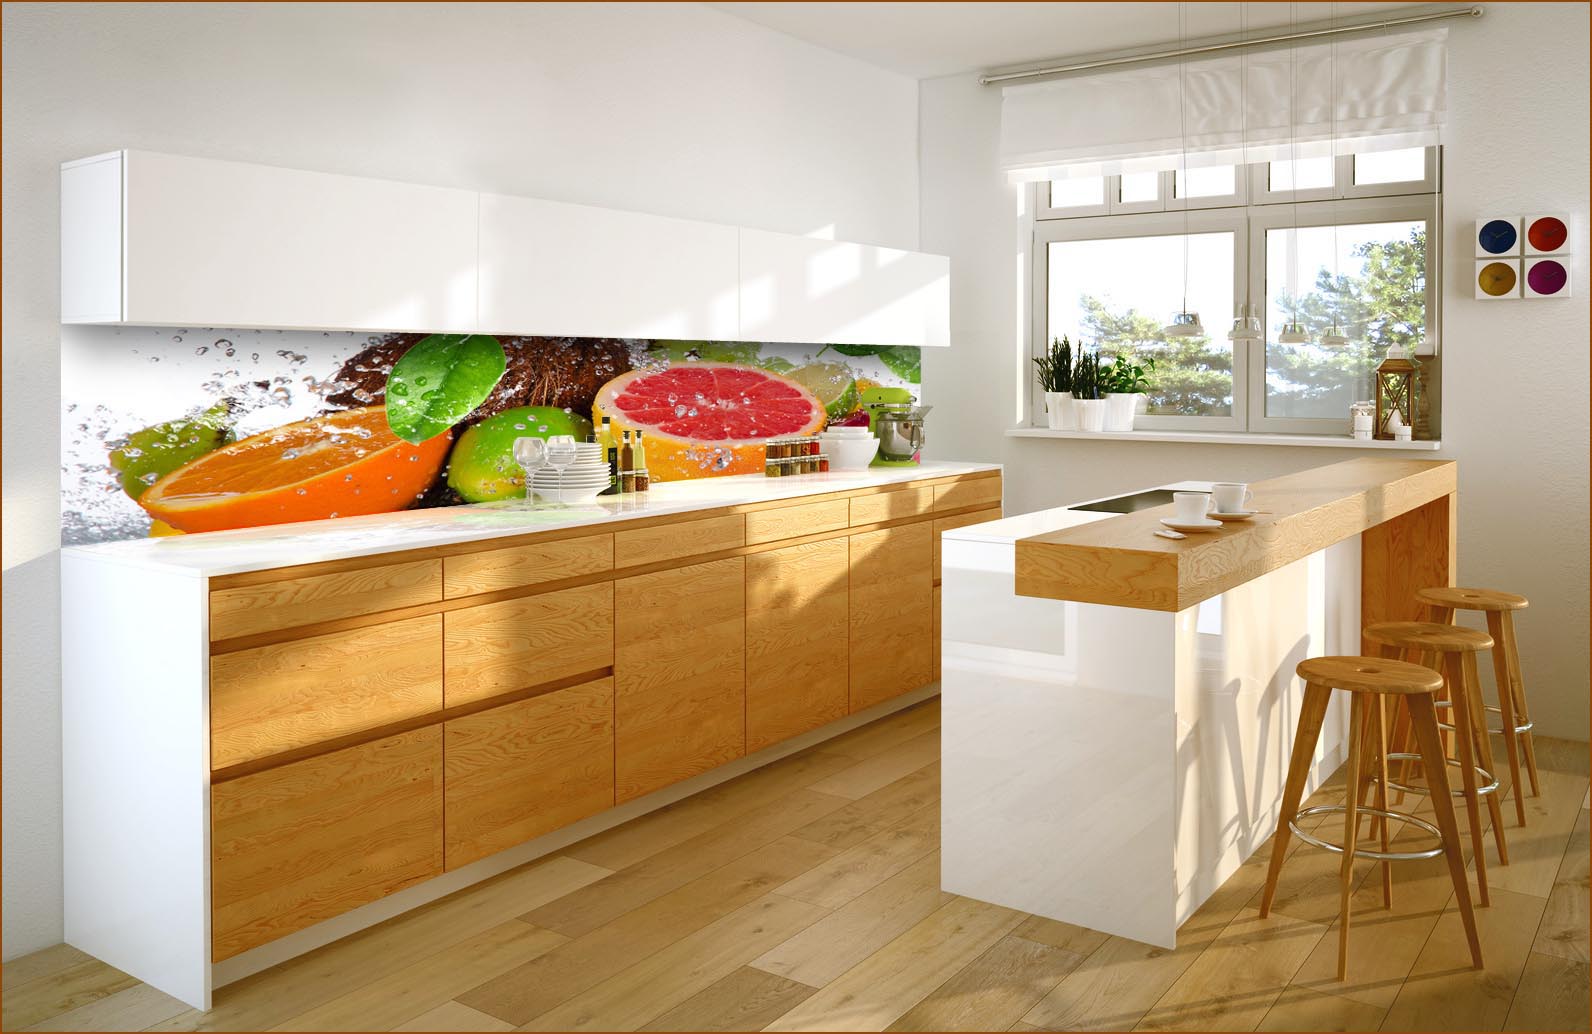 Fototapeta do kuchni - wizualizacja owoców cytrusowych  między szafkami